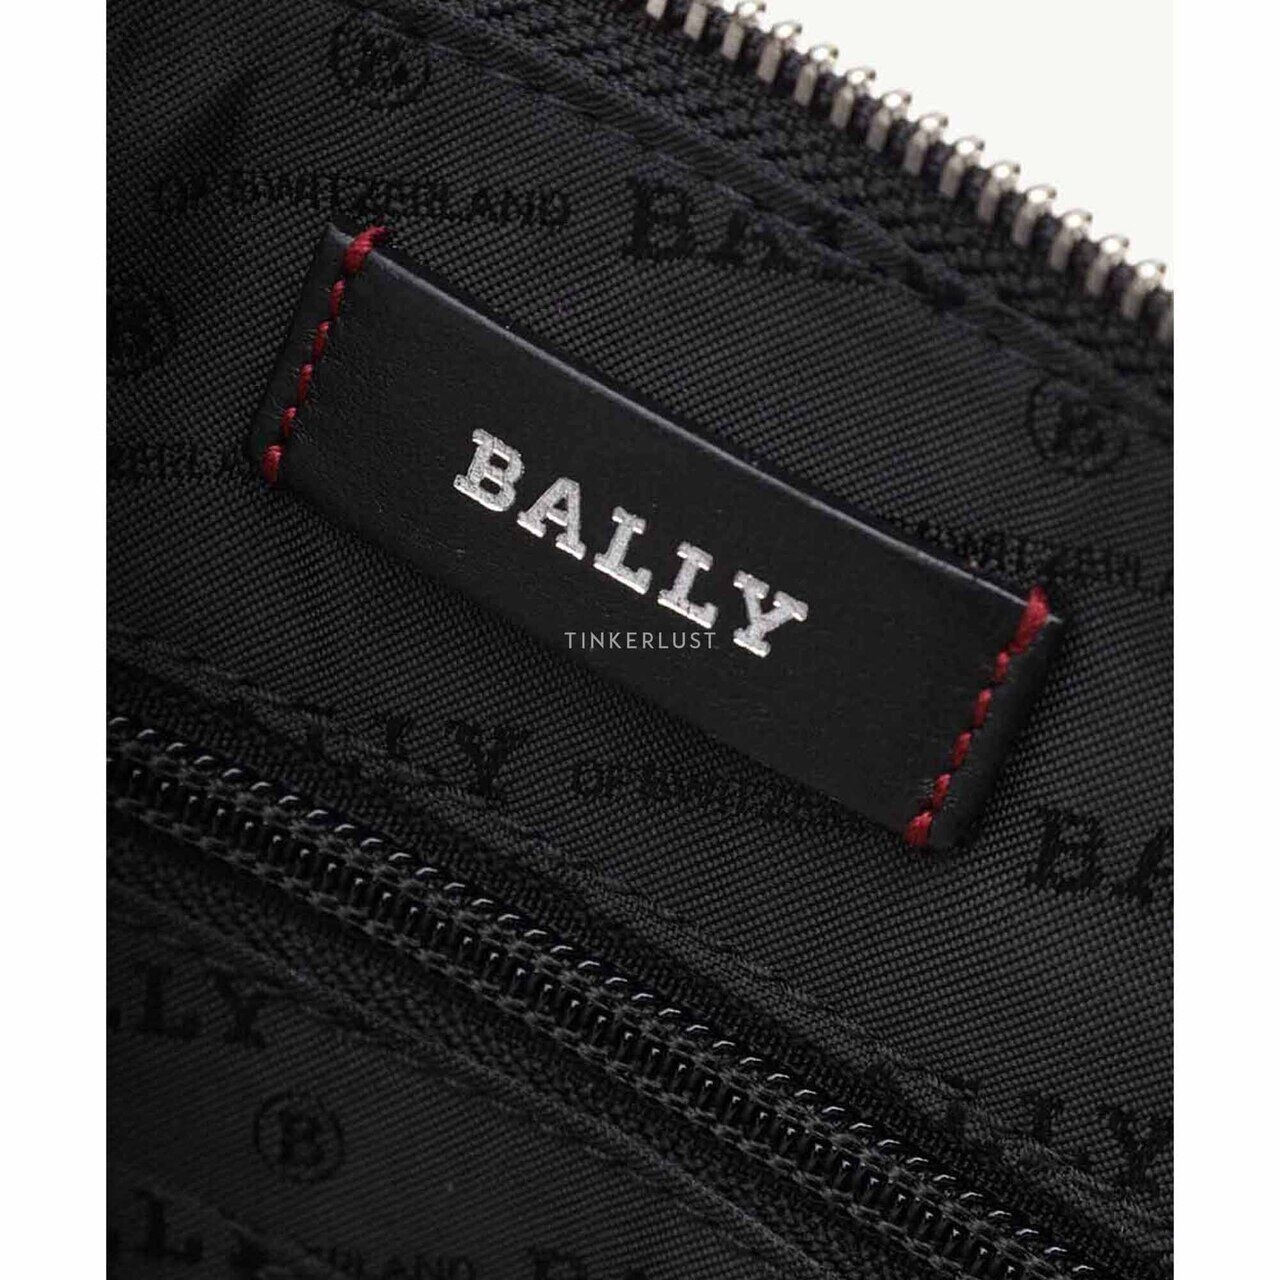 Bally Men Hartland Zipper Clutch in Black with Wrist Strap Wallet